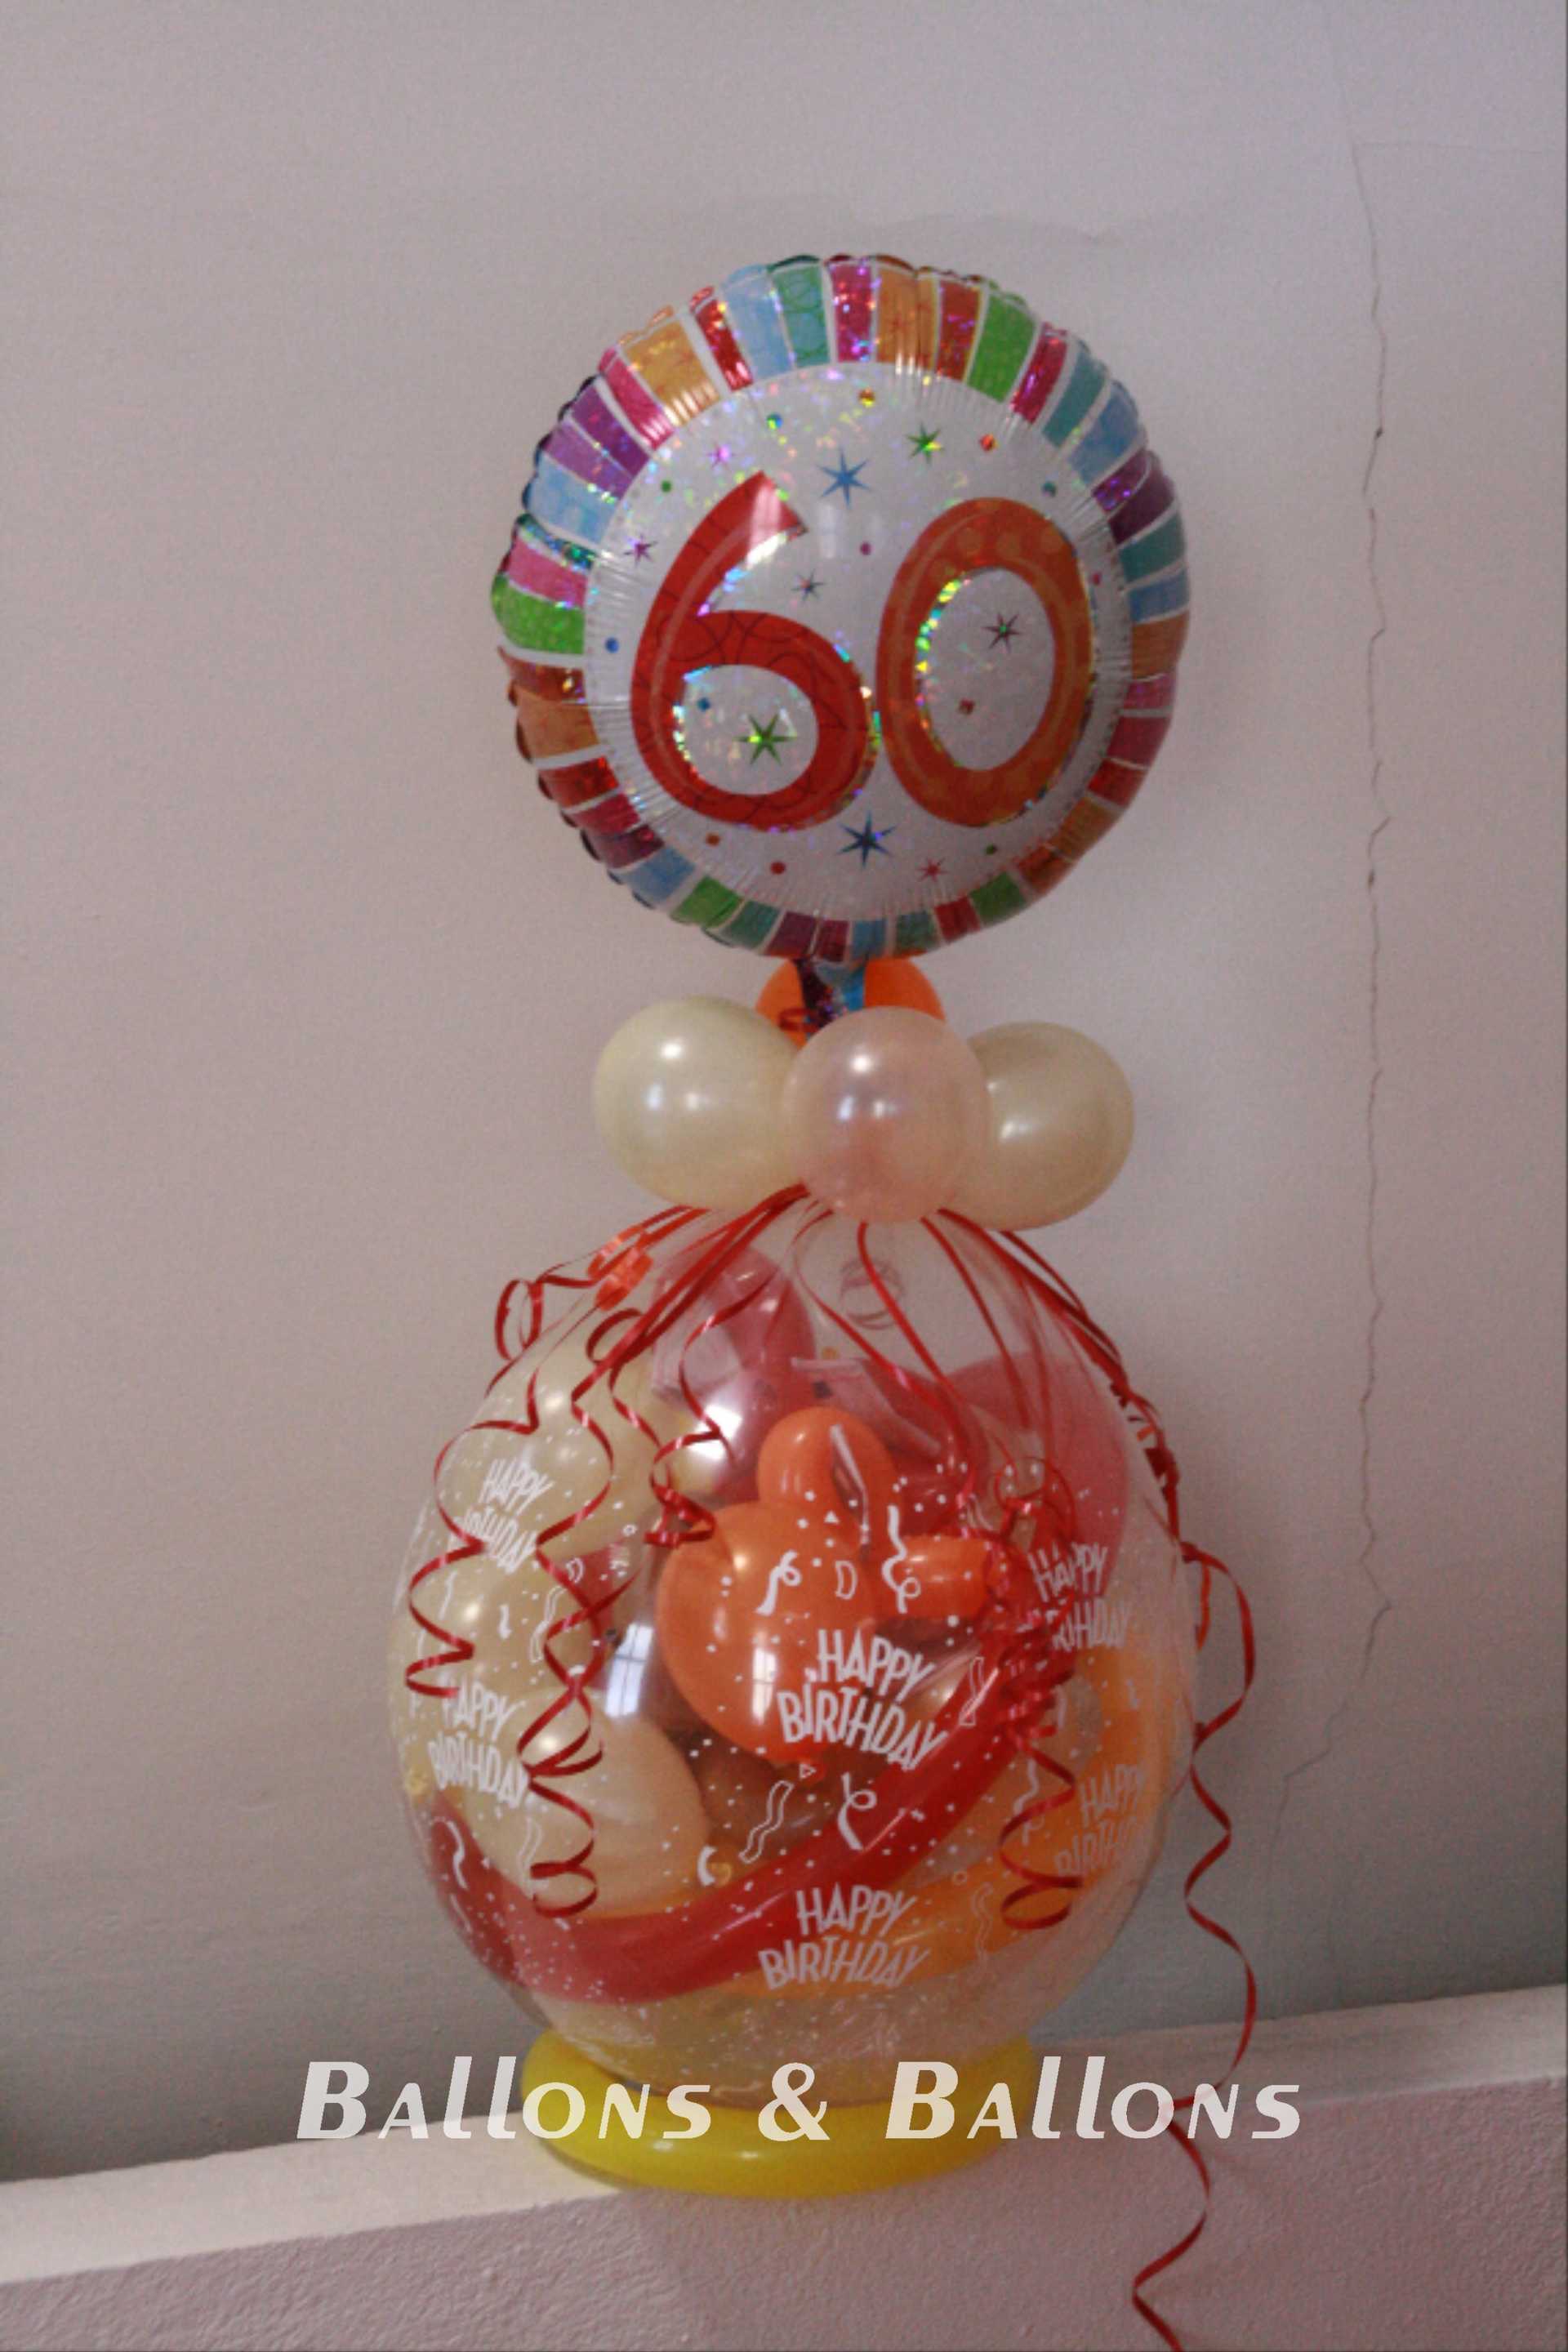 Ein Geburtstagsballon für eine 60-jährige Person.